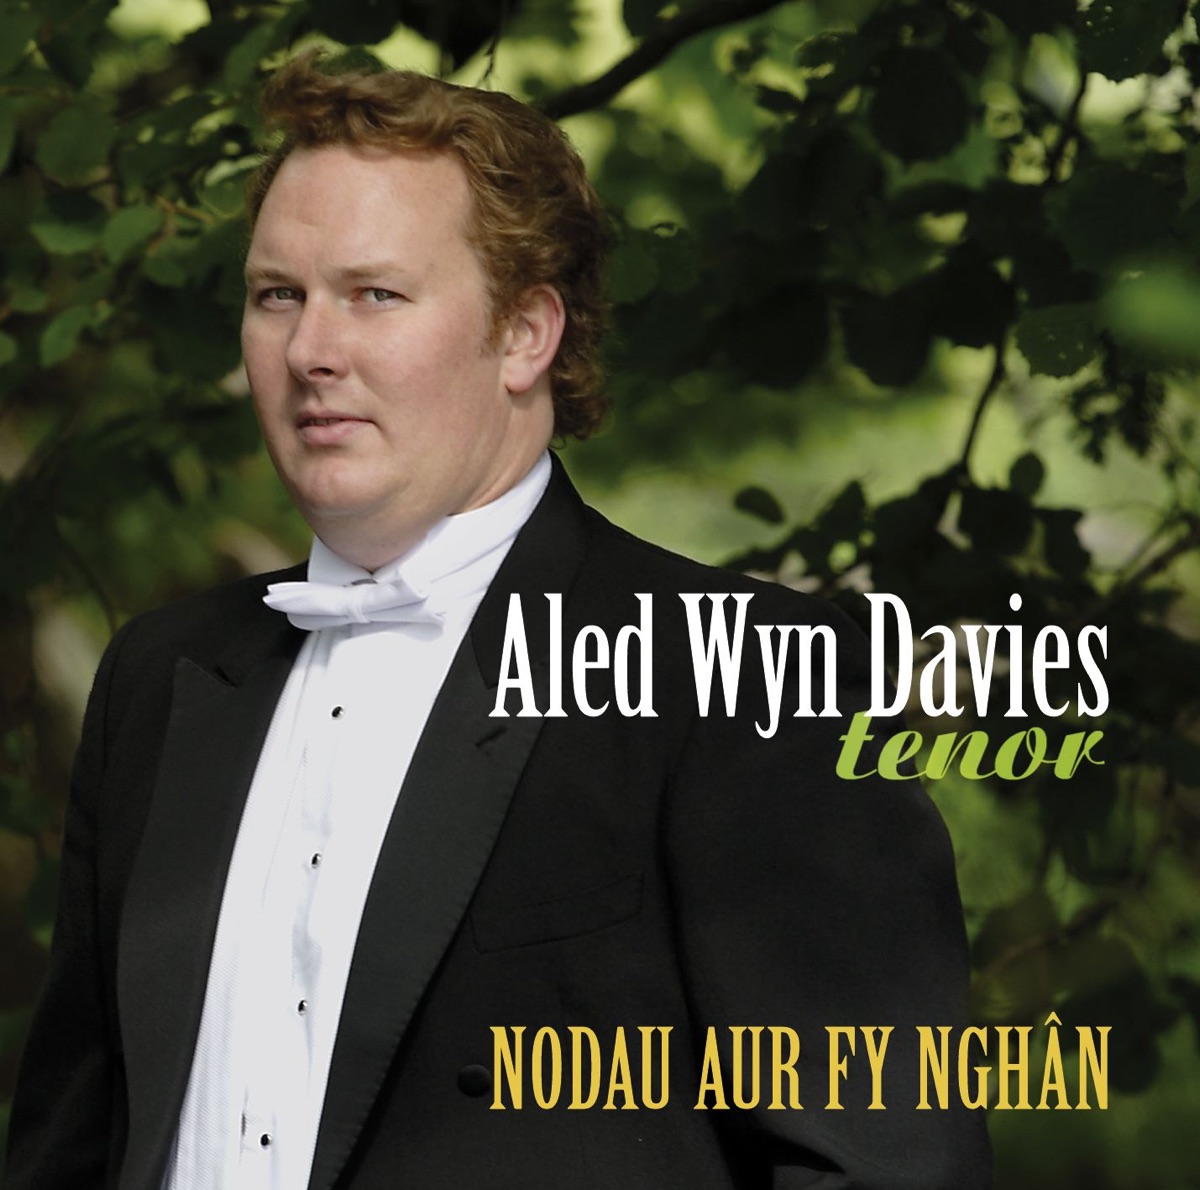 Nodau Aur Fy Nghân - Album by Aled Wyn Davies - Apple Music